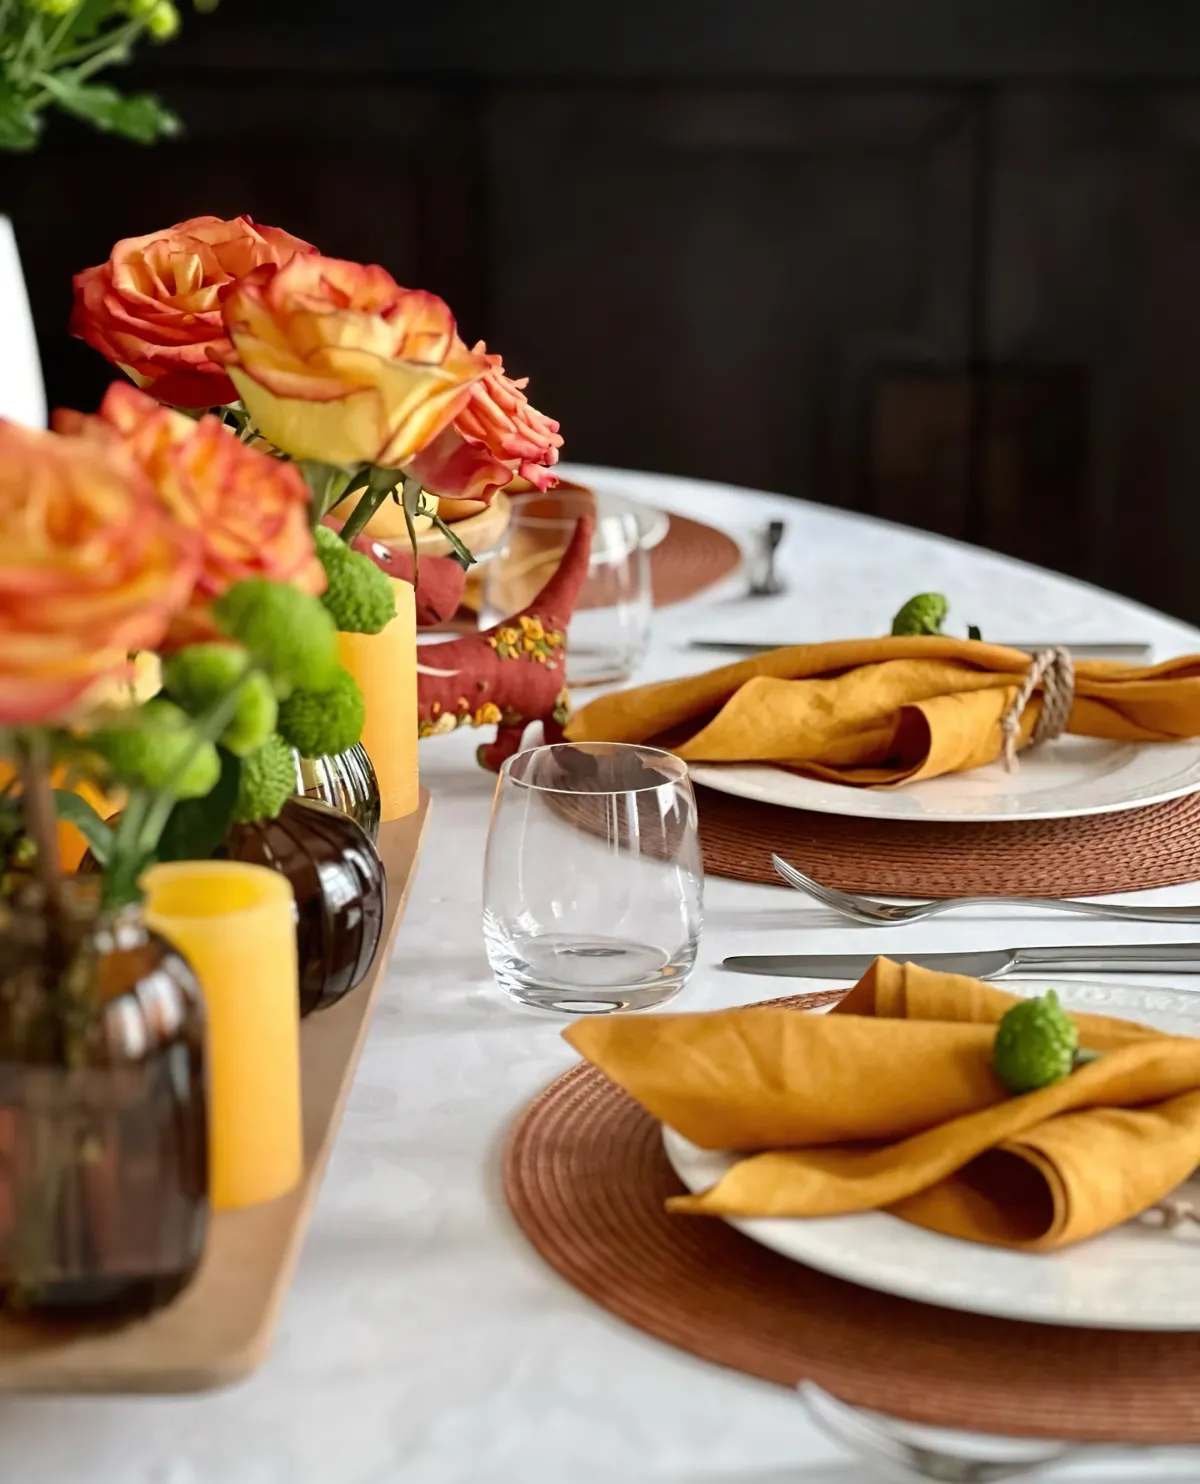 esstisch deko in gelb rosen in kleinen glasvasen servietten aus leinen